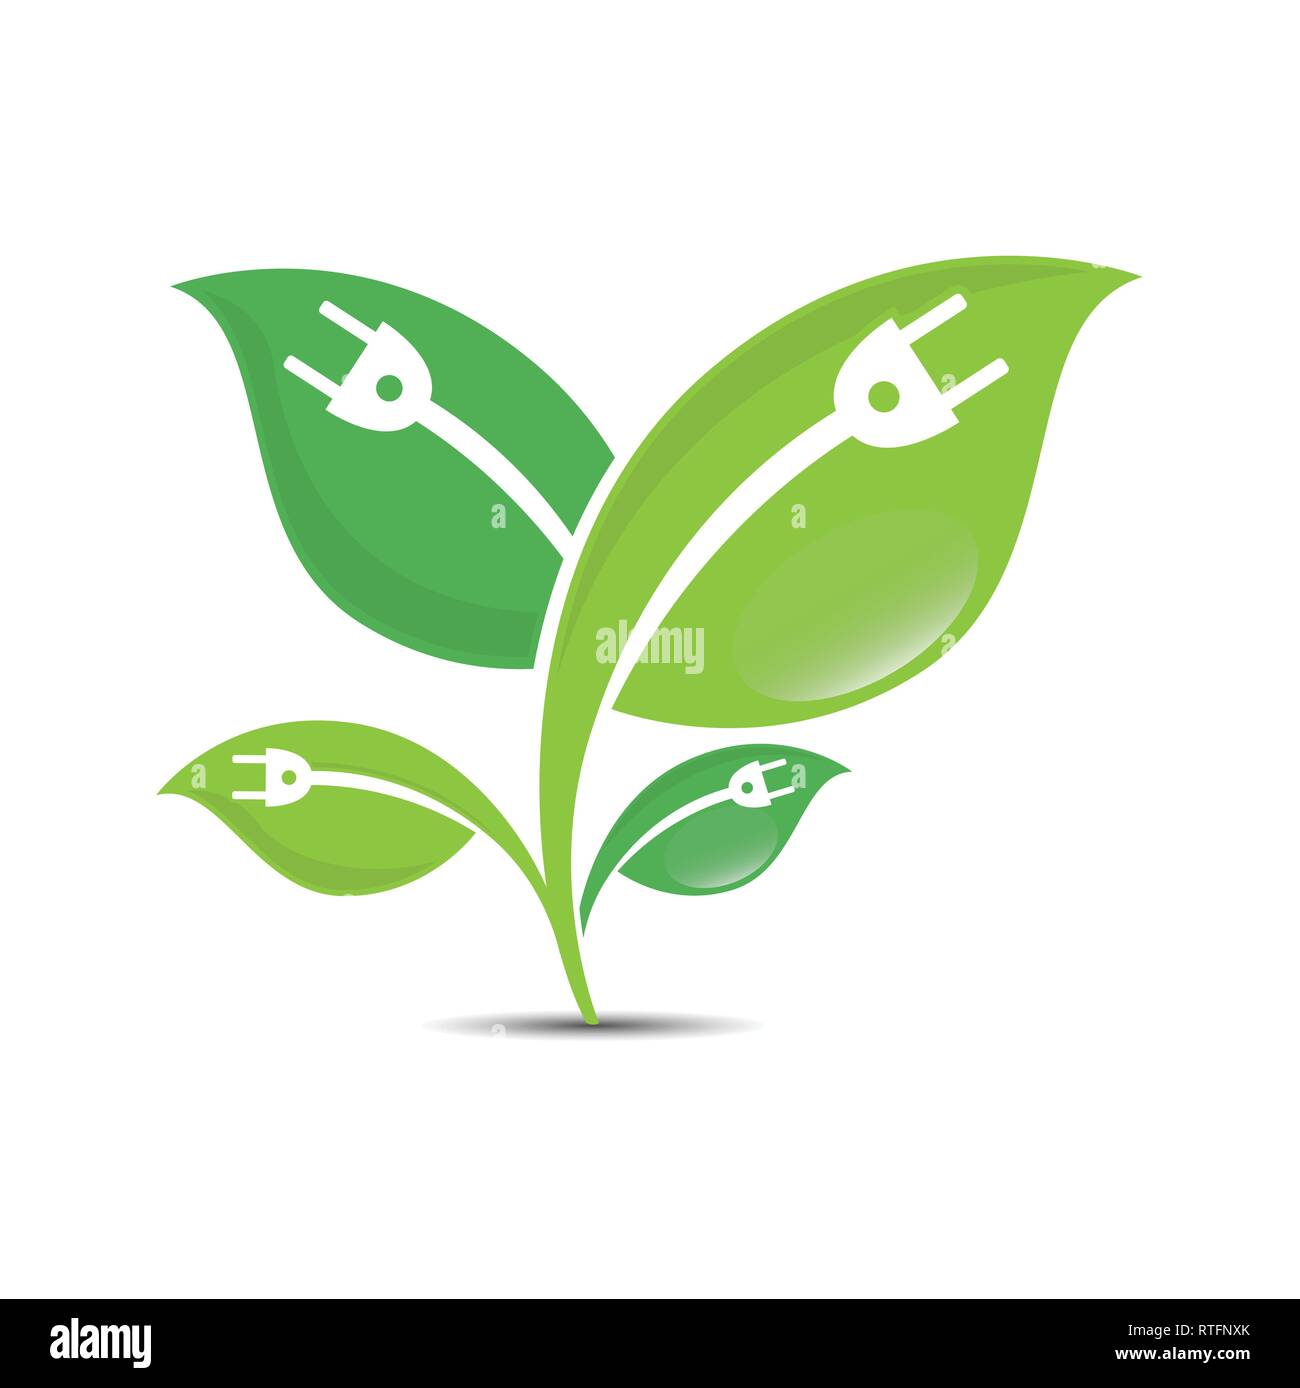 Abstrakte grünes Blatt mit elektrischen Stecker logo-Element vektor design Ökologie Symbol. Leaf logo Symbol und der Green leaf logo Emblem Stock Vektor